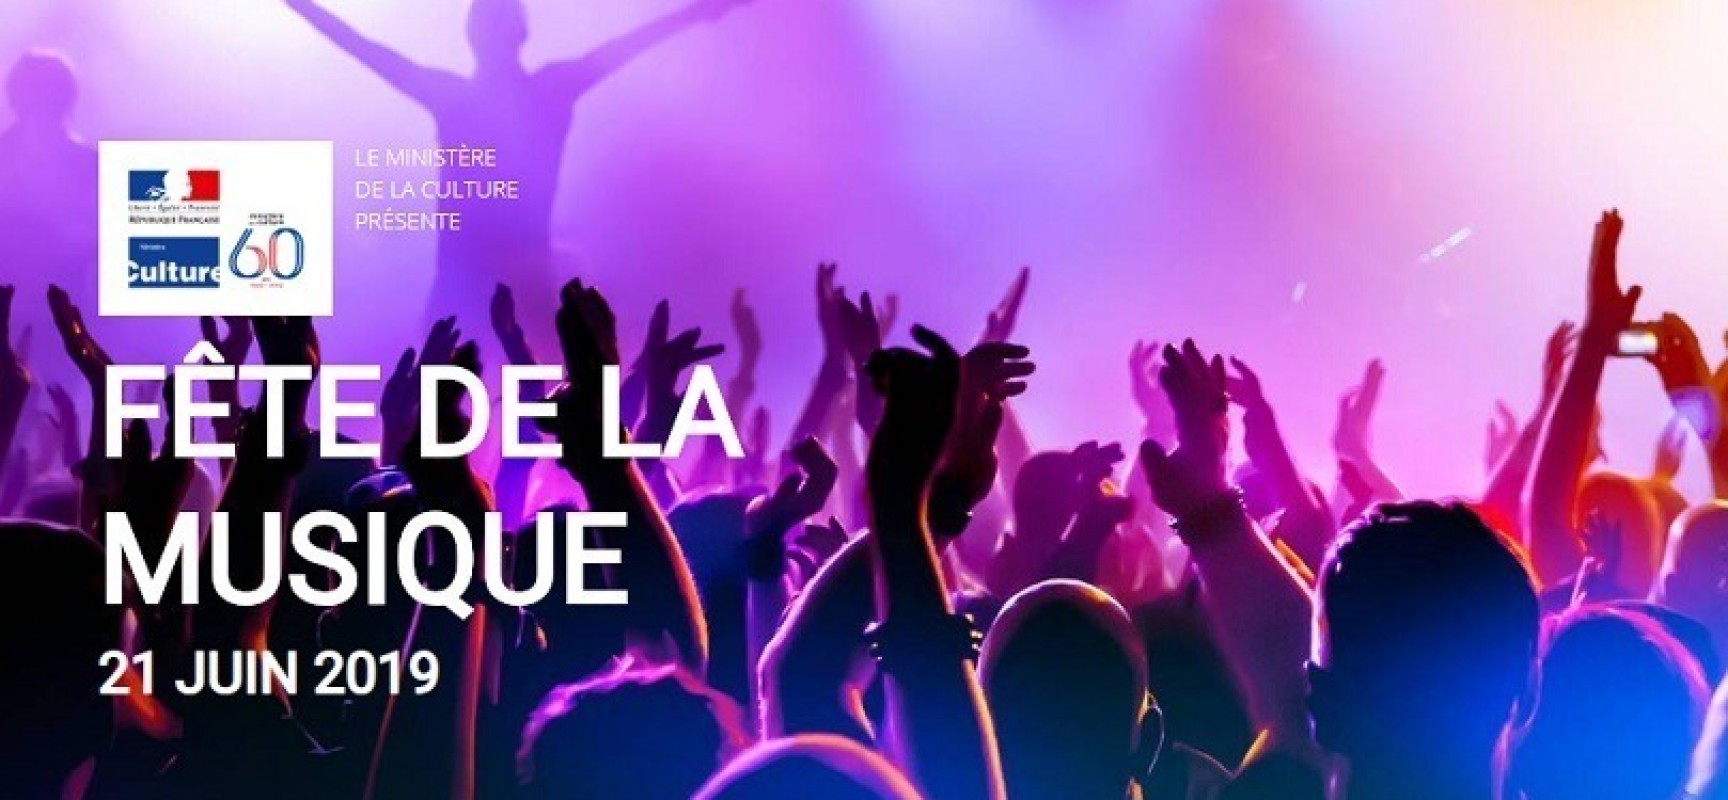 Programme fête de la musique 2019 #AUBUSSON #FDM2019